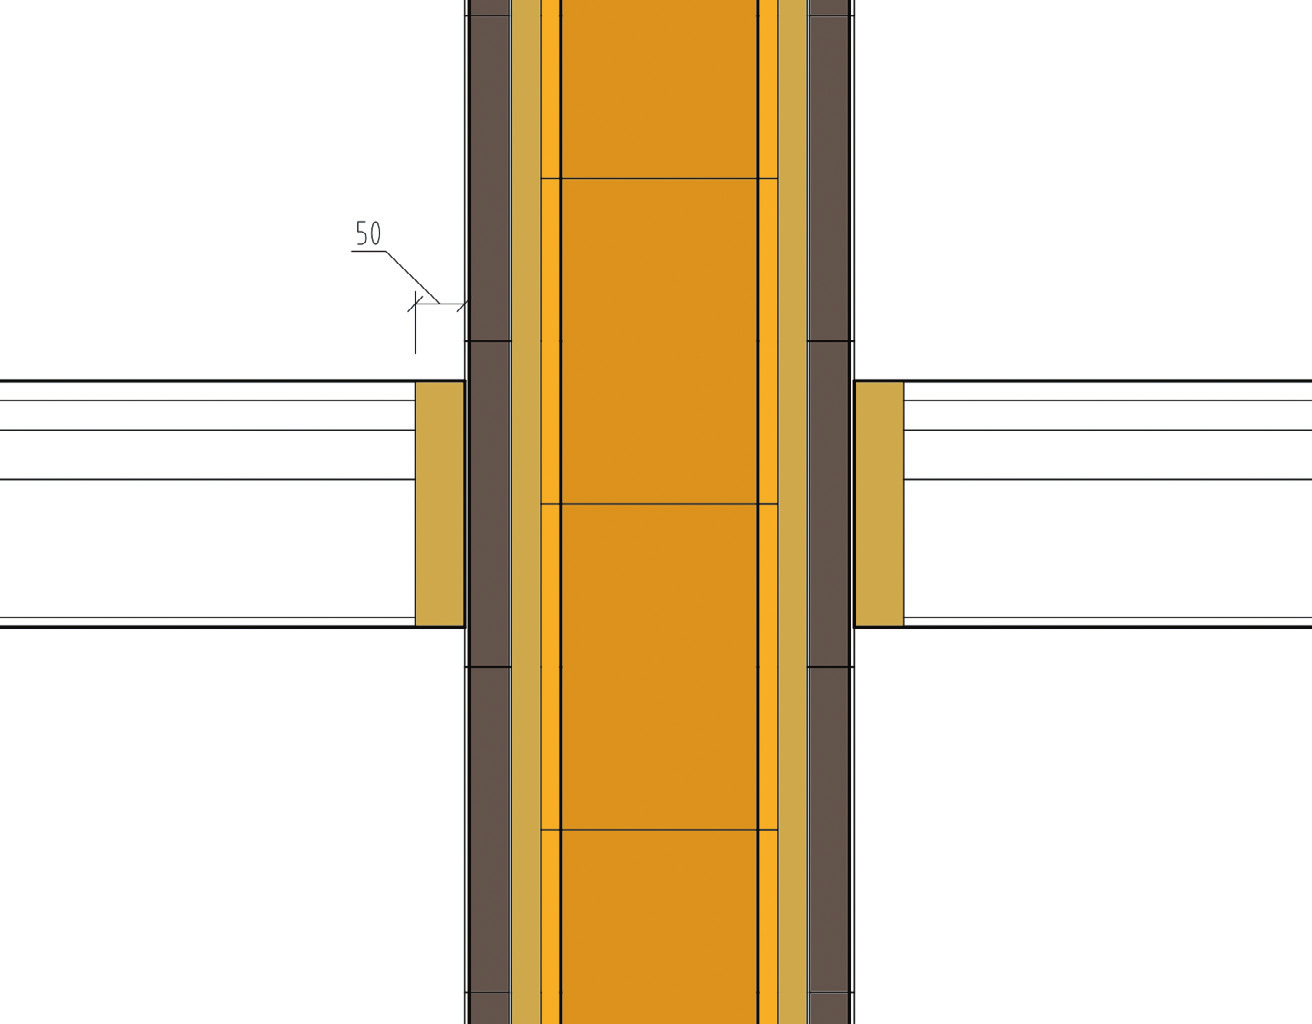 PRESTUPY KOMÍNA STAVEBNÝMI KONŠTRUKCIAMI Pri projektovaní i prevádzaní prestupov komína stavebnými konštrukciami musí byť vždy umožnená dilatácia komínového prieduchu.